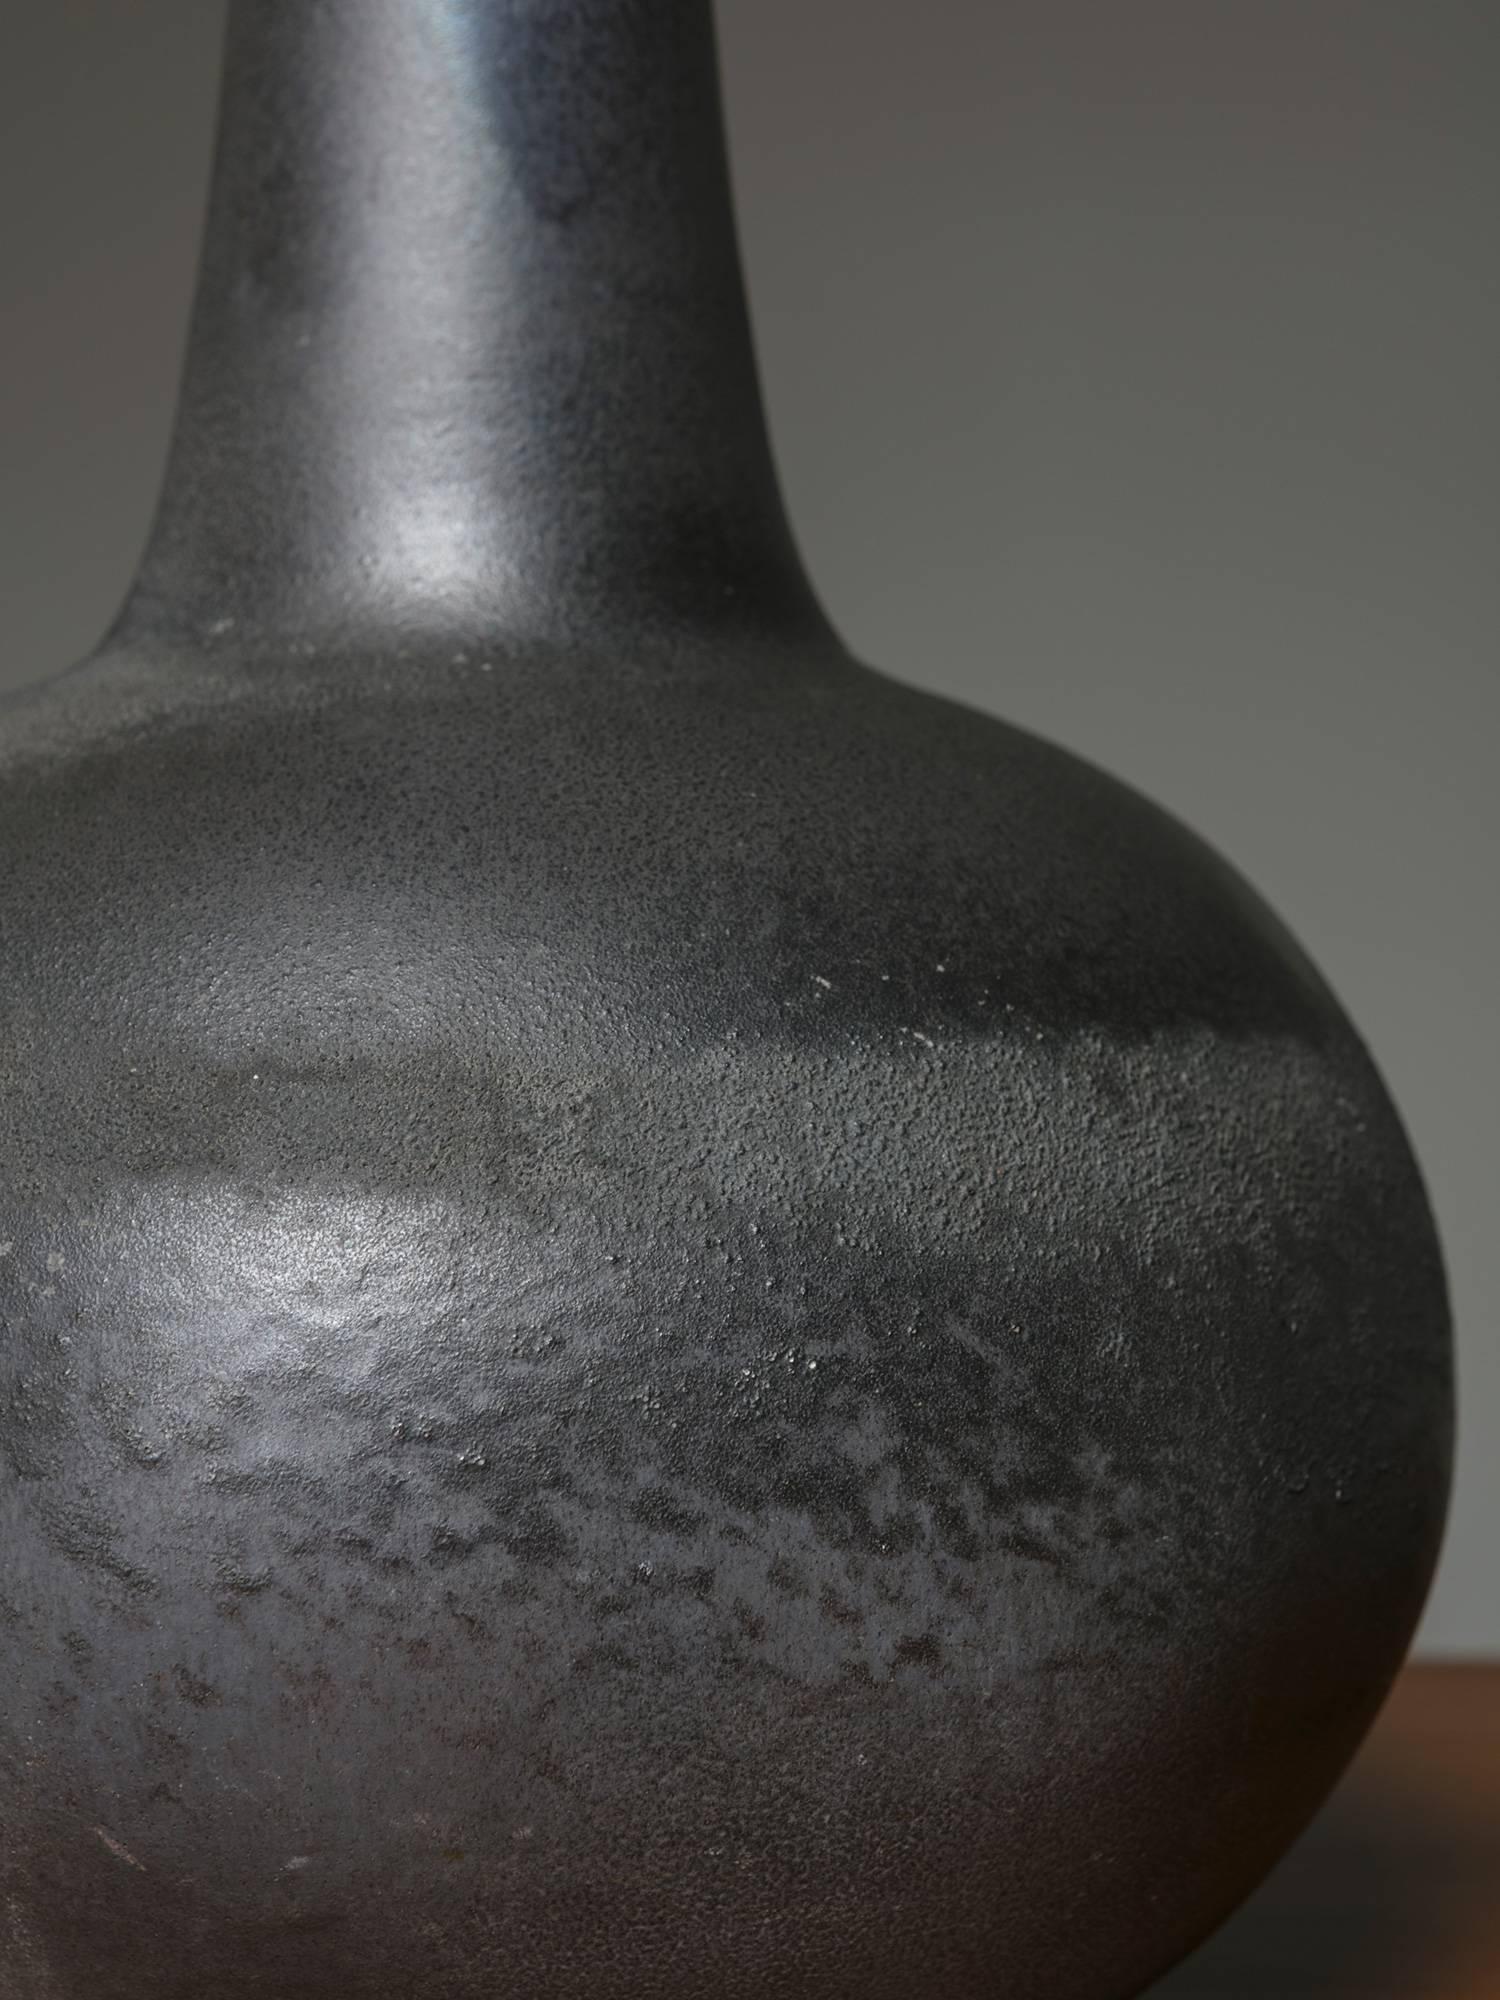 Remarquable vase en céramique avec une finition de surface délicate.